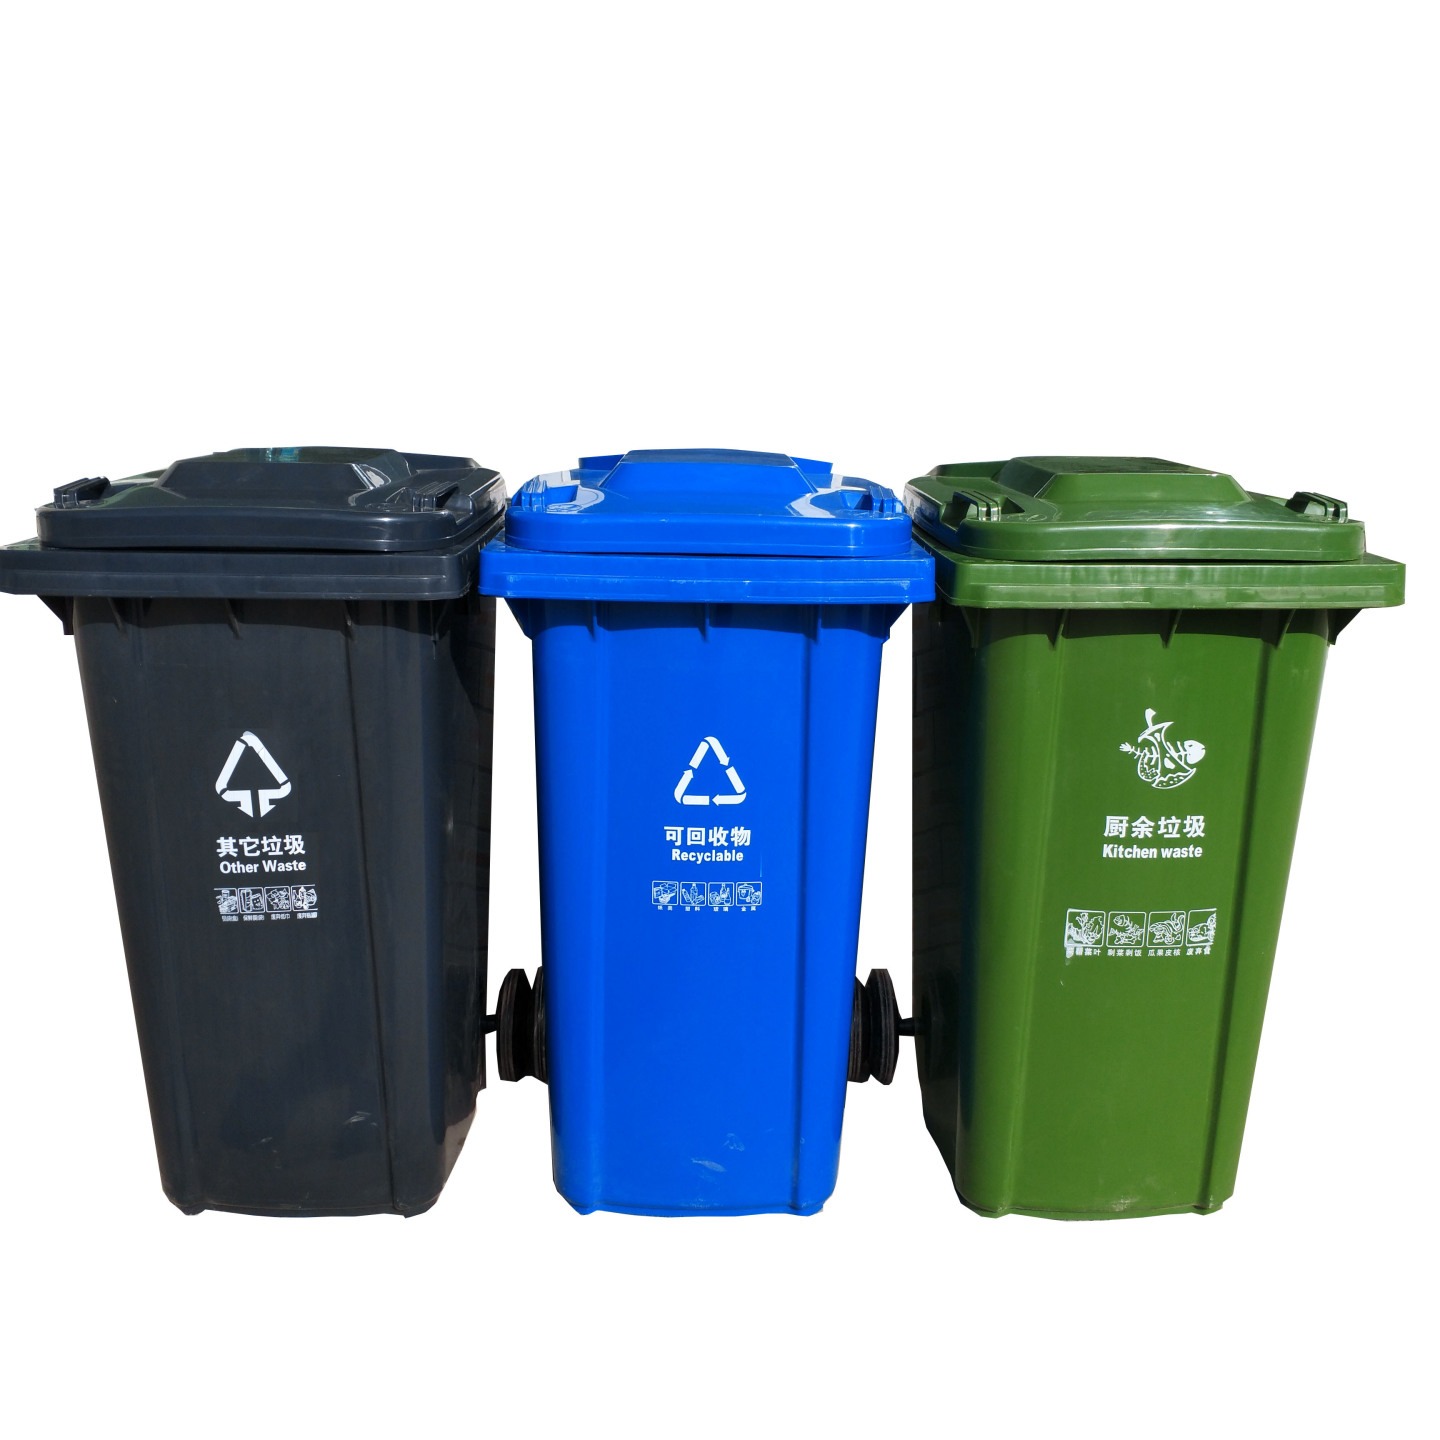 垃圾桶分类 可回收垃圾桶 不可回收垃圾桶 瑞名达干垃圾桶 挂车垃圾桶 铁制垃圾桶 4分类垃圾桶 多种可选